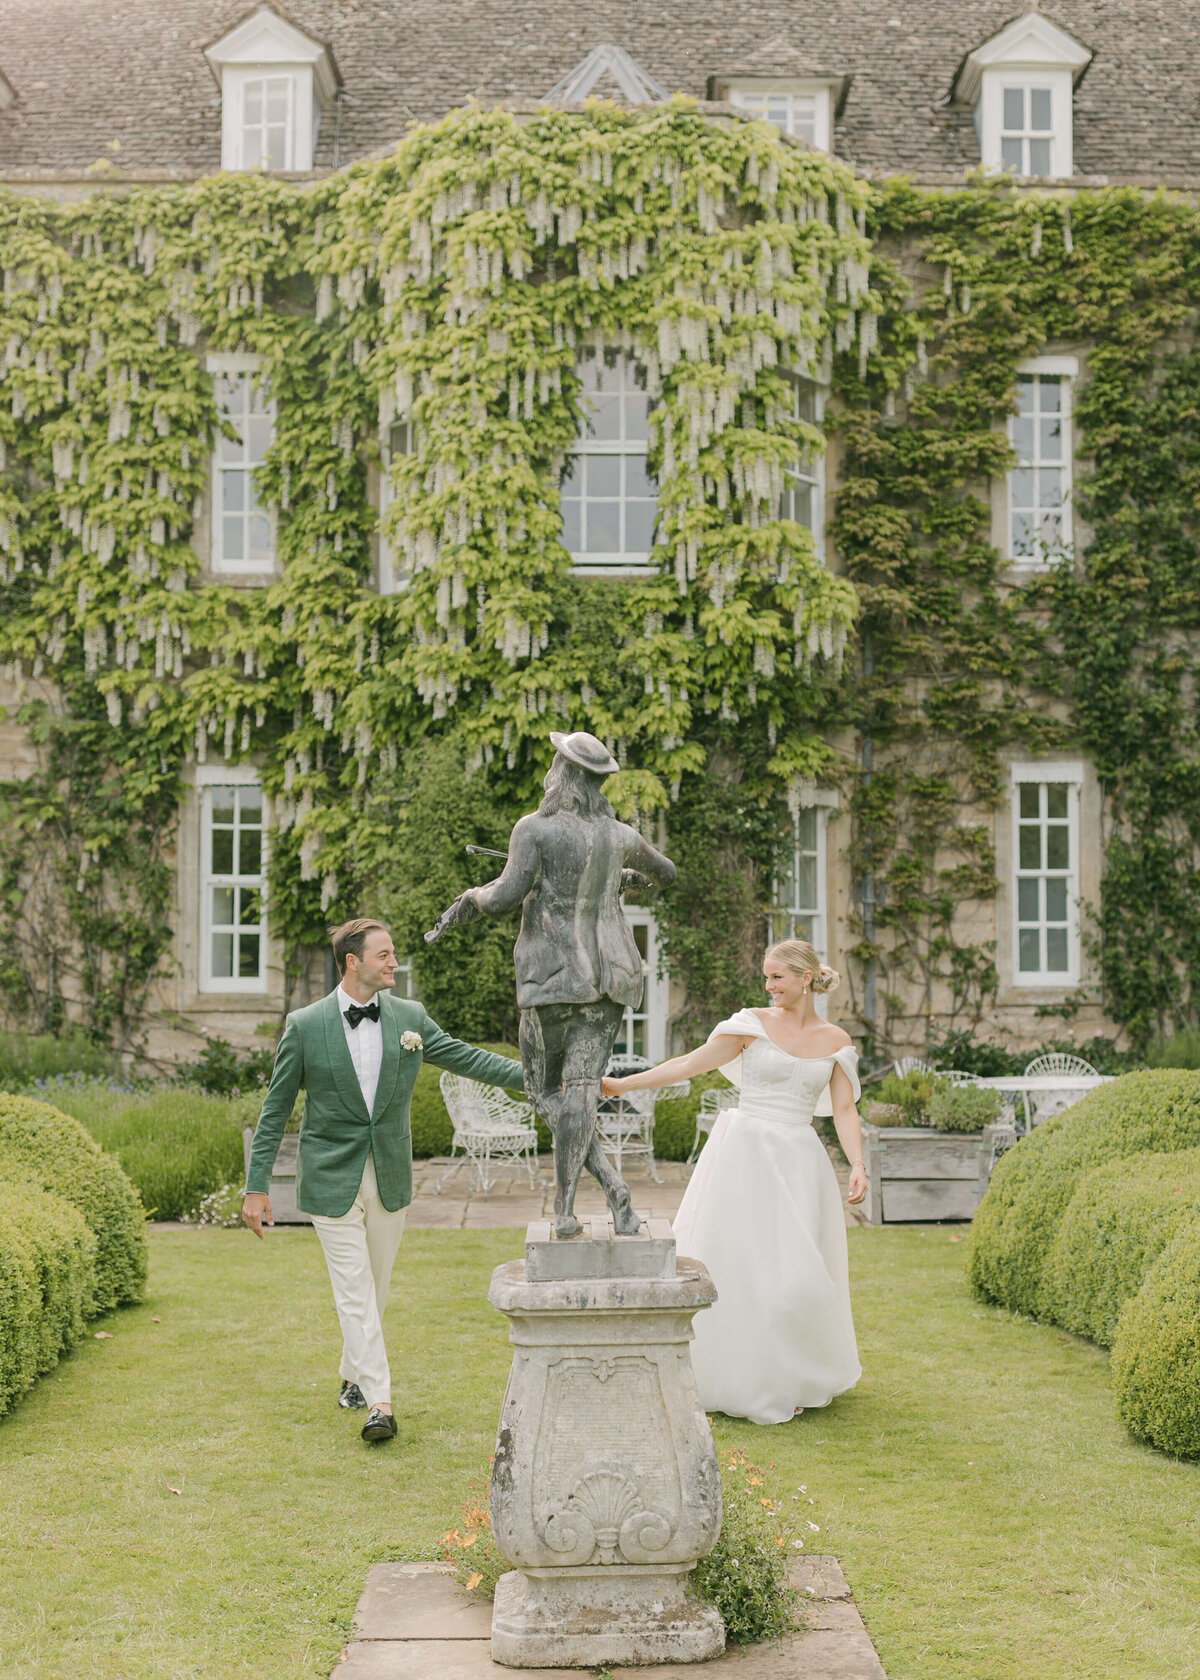 chloe-winstanley-weddings-cotswolds-cornwell-manor-monique-lhuillier-bride-groom-statue